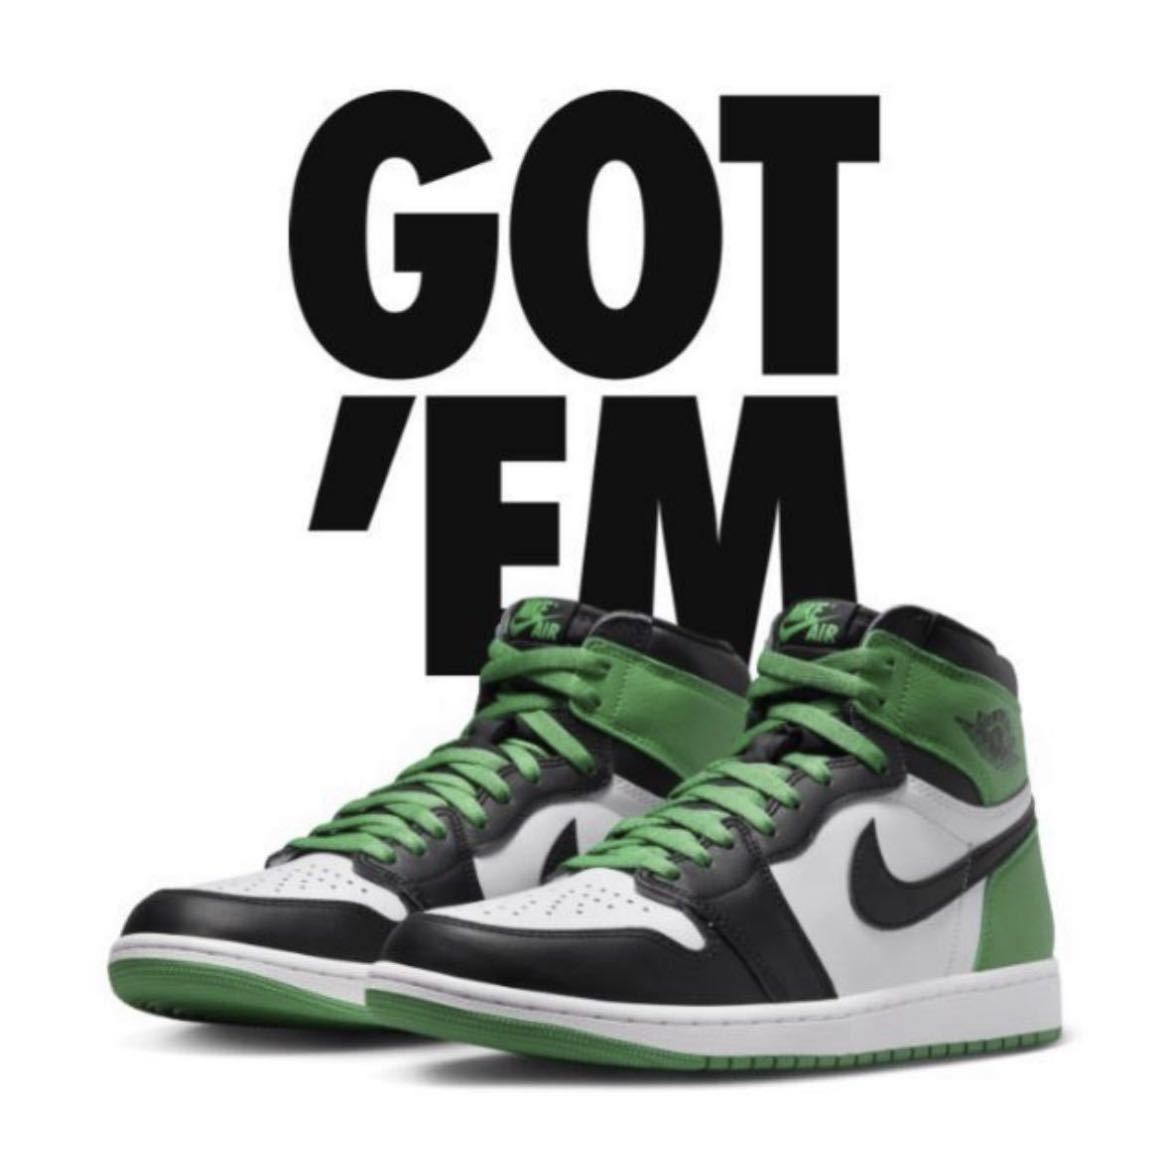 27.5cm Nike Air Jordan 1 Retro High OG Celtics Lucky Green ナイキエアジョーダン1 レトロ ハイ